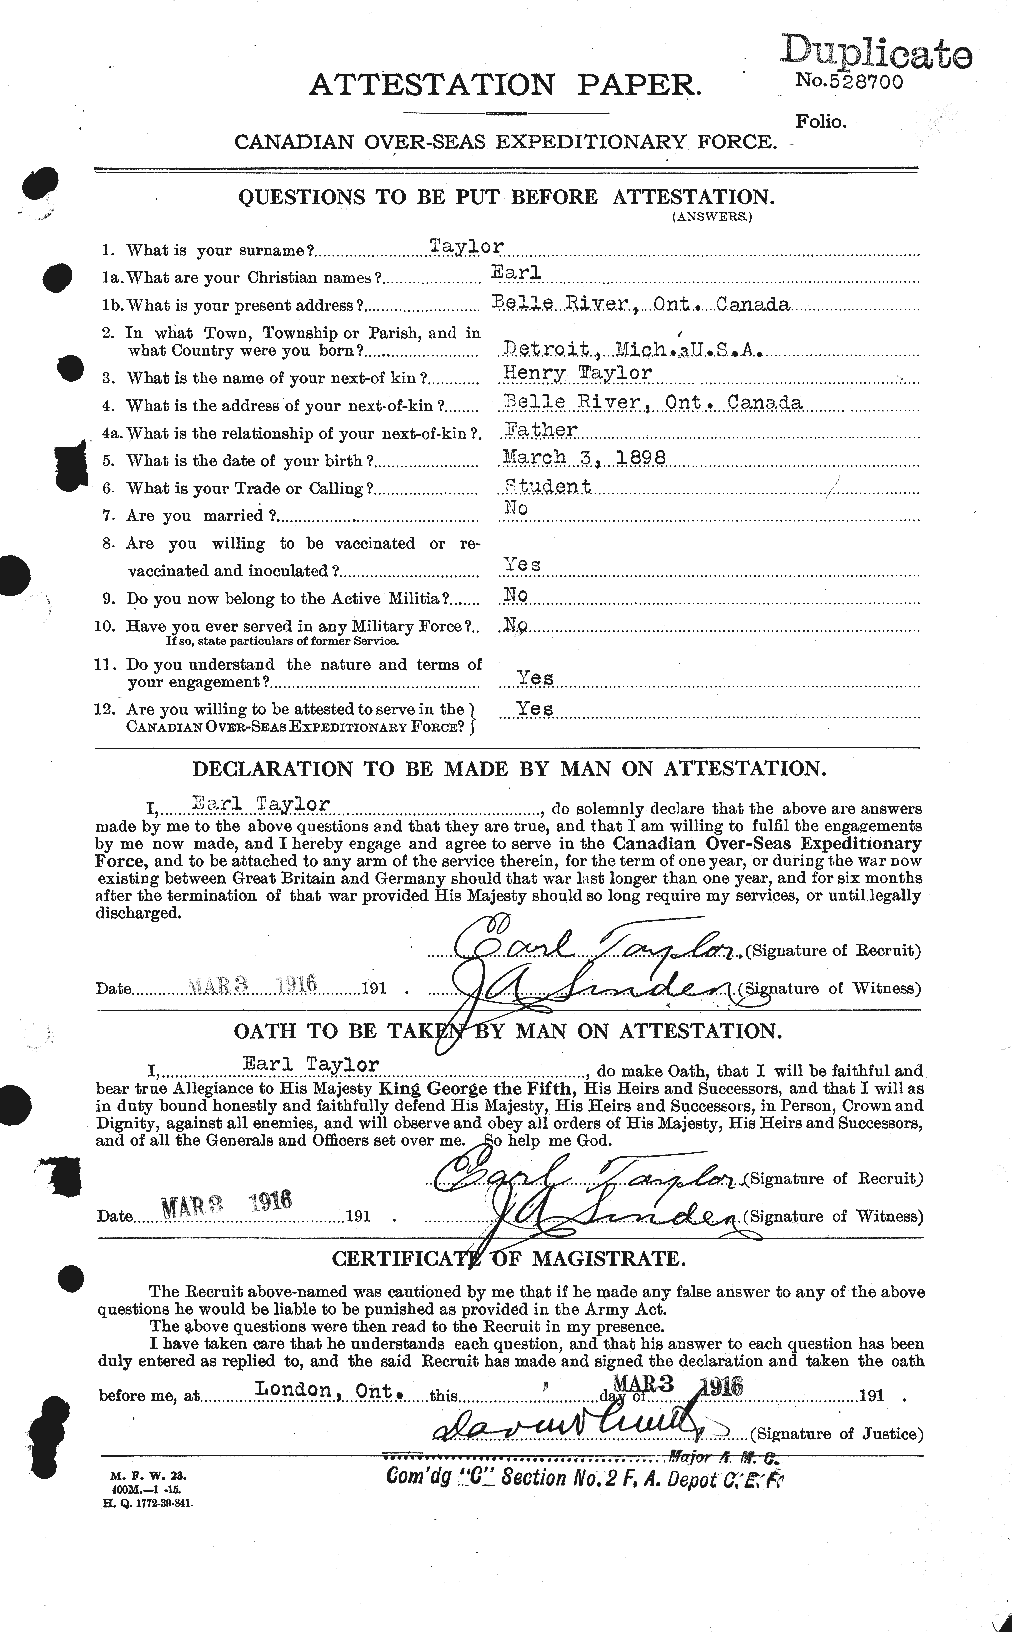 Dossiers du Personnel de la Première Guerre mondiale - CEC 627264a